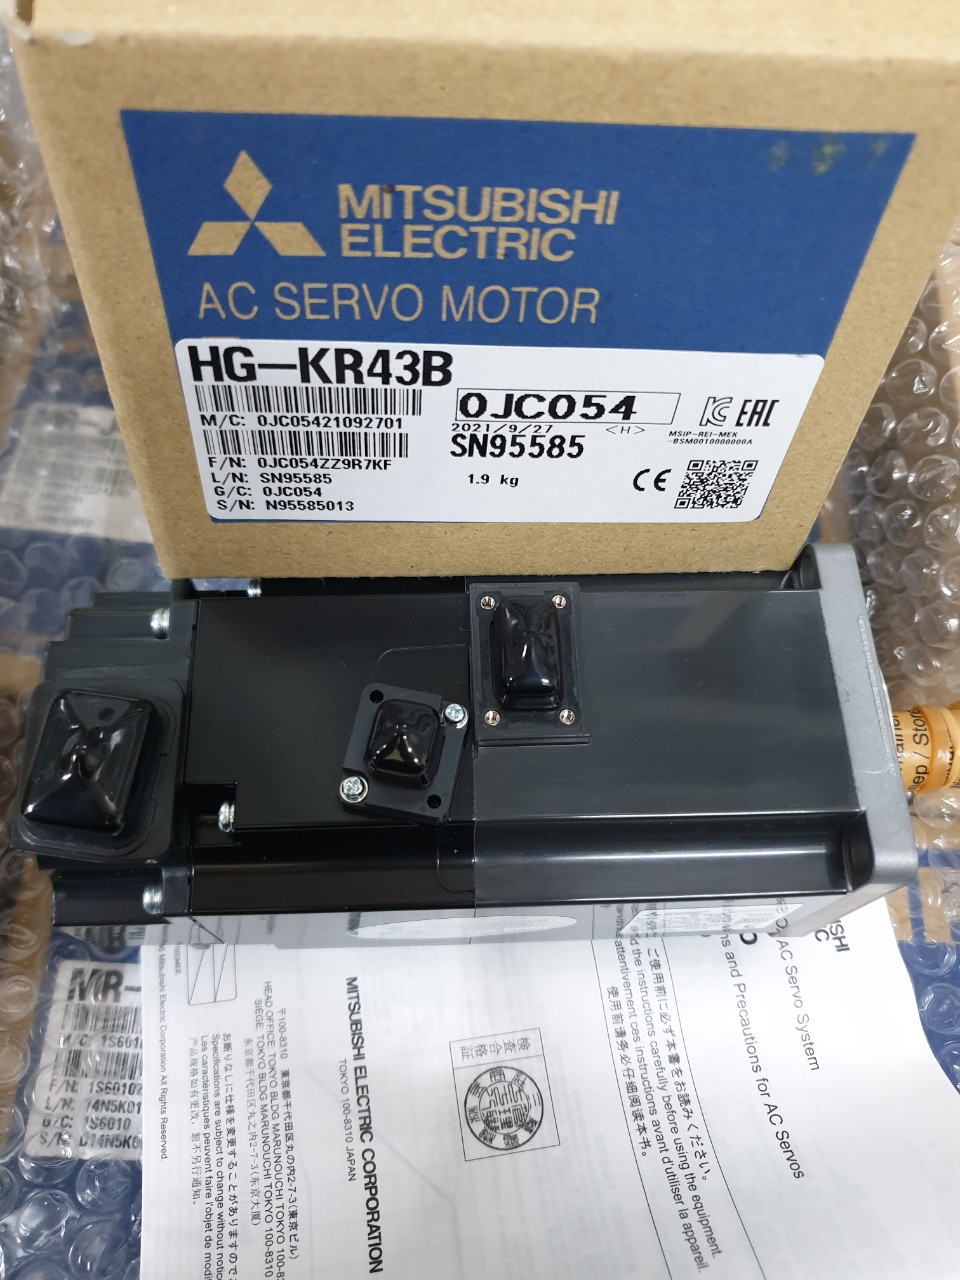 MITSUBISHI HG-KR43B